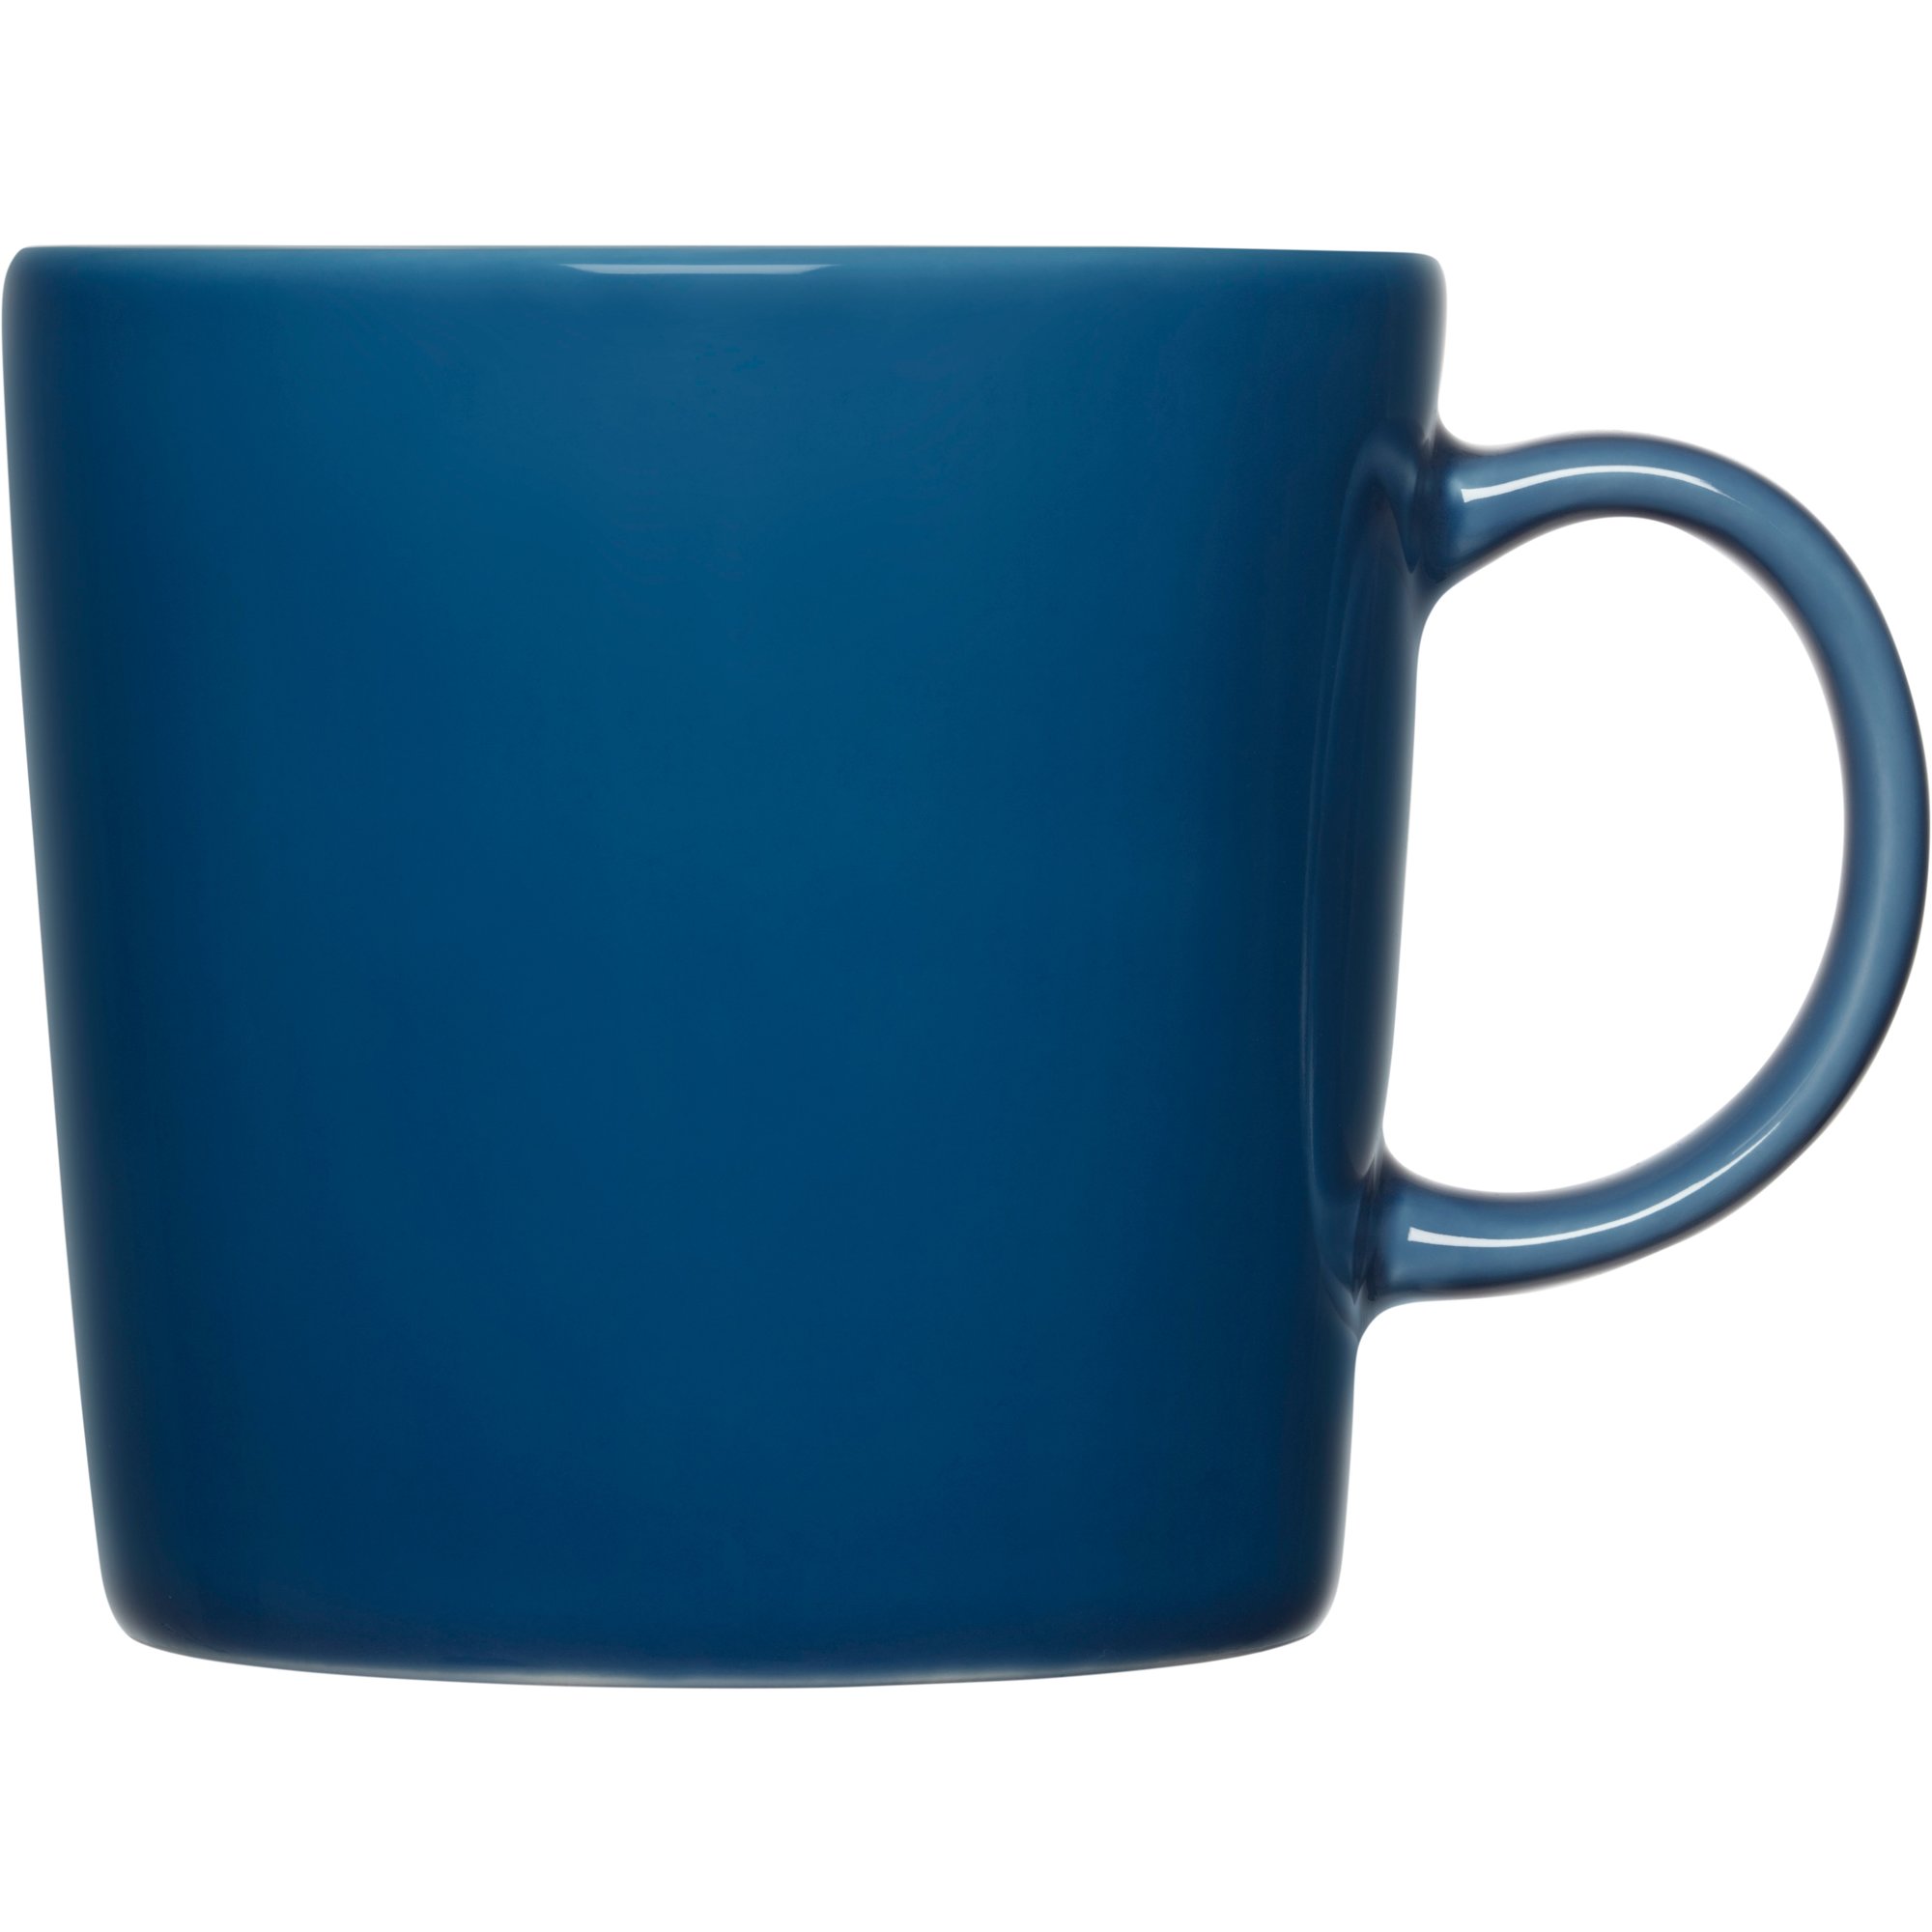 5: Iittala Teema krus, 0,3 liter, vintage blå